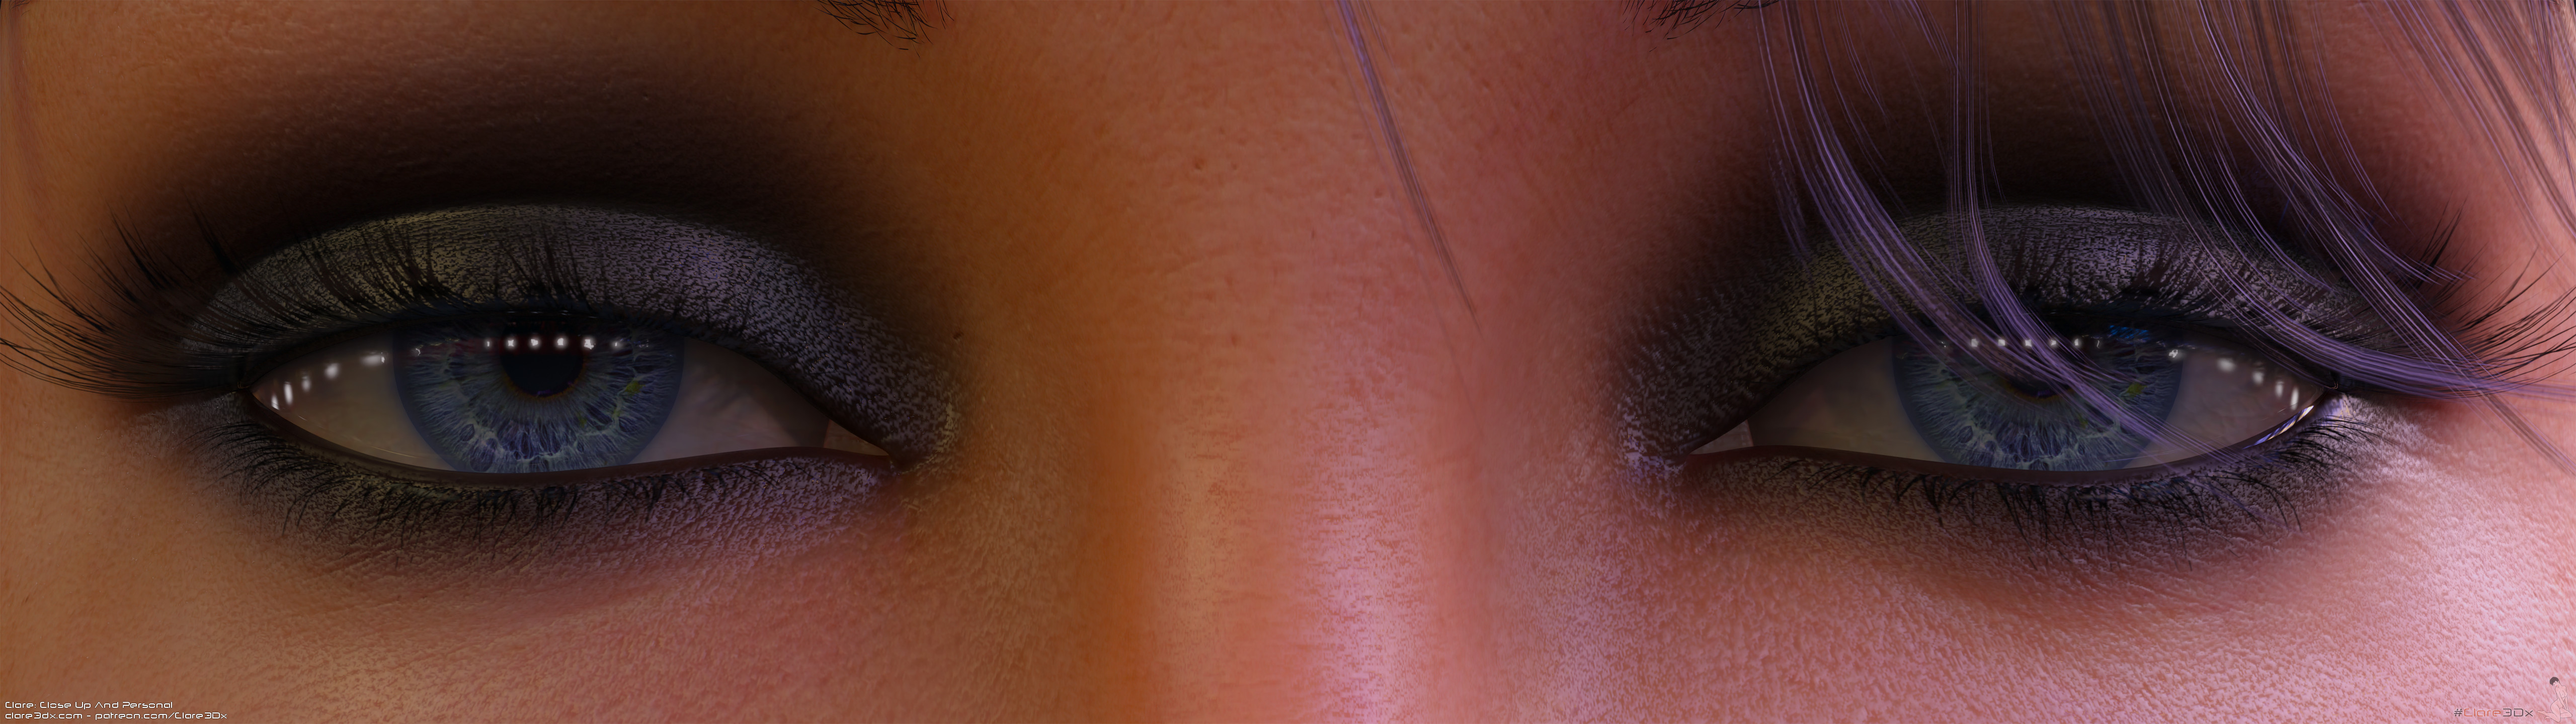 3D Eyes Ultrawide Closeup Smoky Eyes 5120x1440